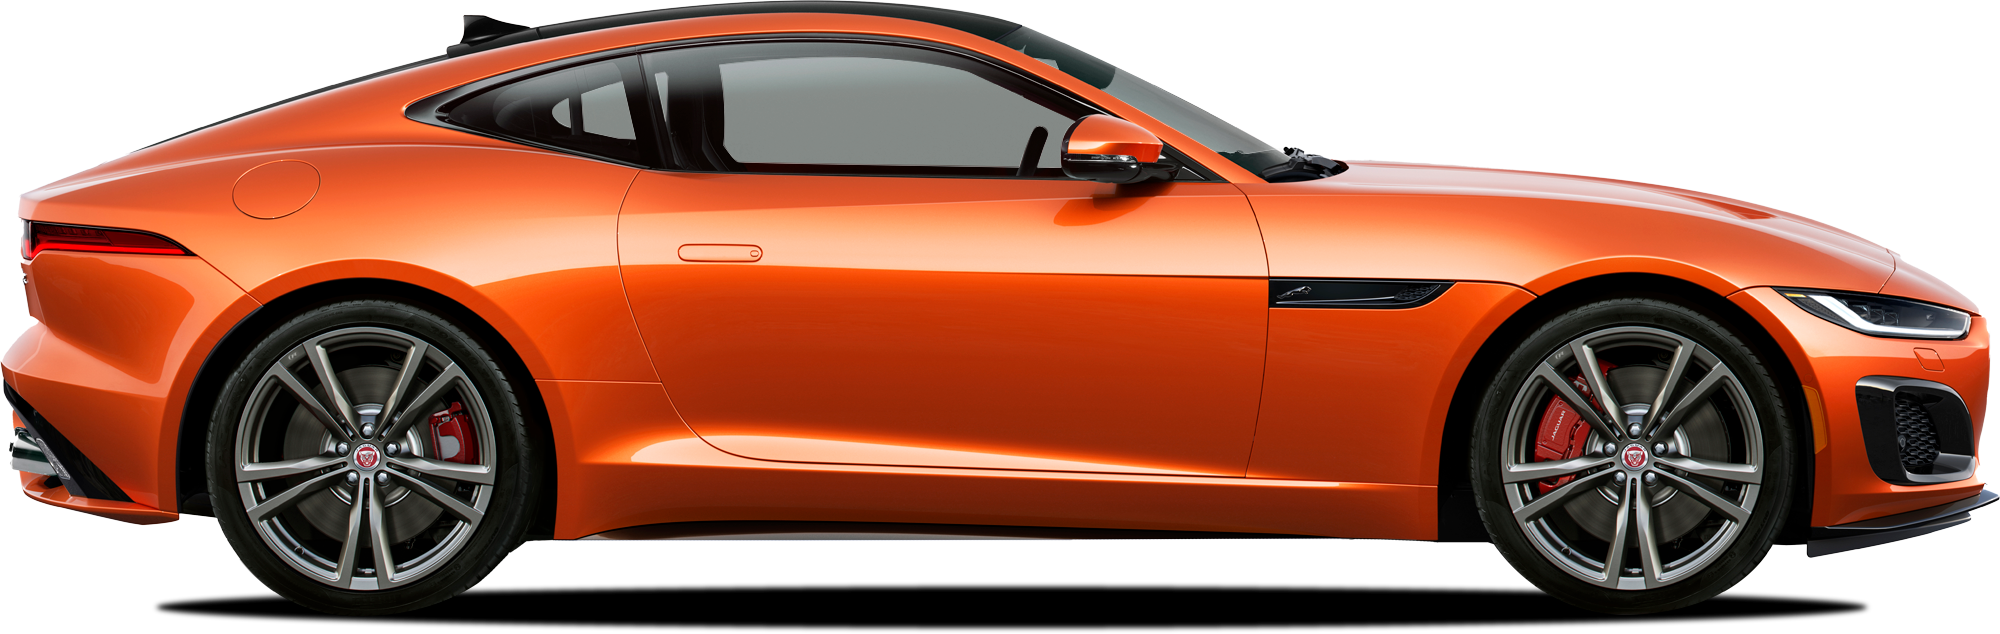 http://images.dealer.com/ddc/vehicles/2023/Jaguar/F-TYPE/Coupe/trim_R_e498e7/perspective/side-left/2023_24.png